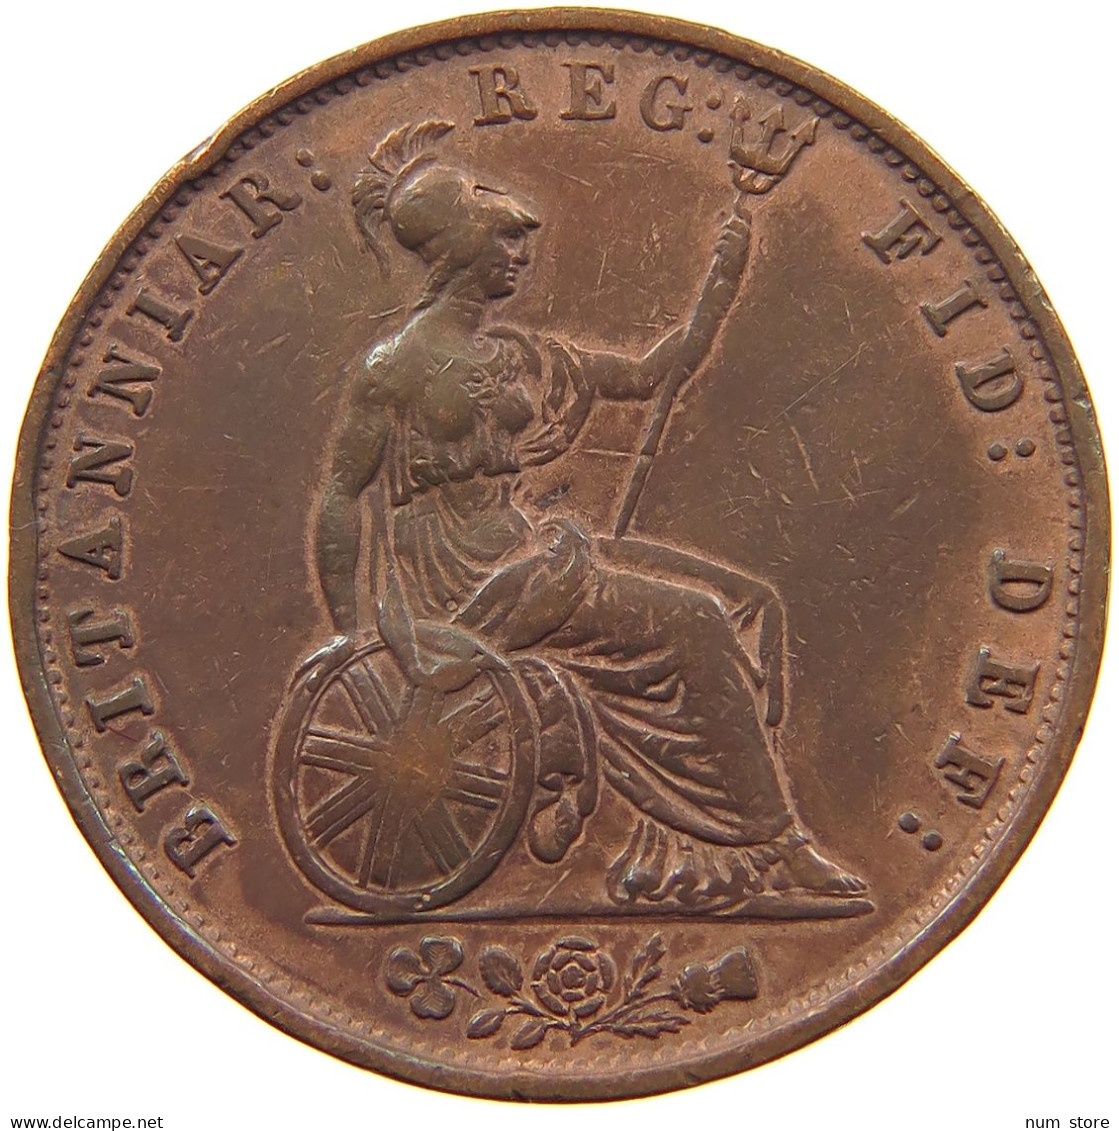 GREAT BRITAIN HALFPENNY 1853 Victoria 1837-1901 #c003 0171 - C. 1/2 Penny